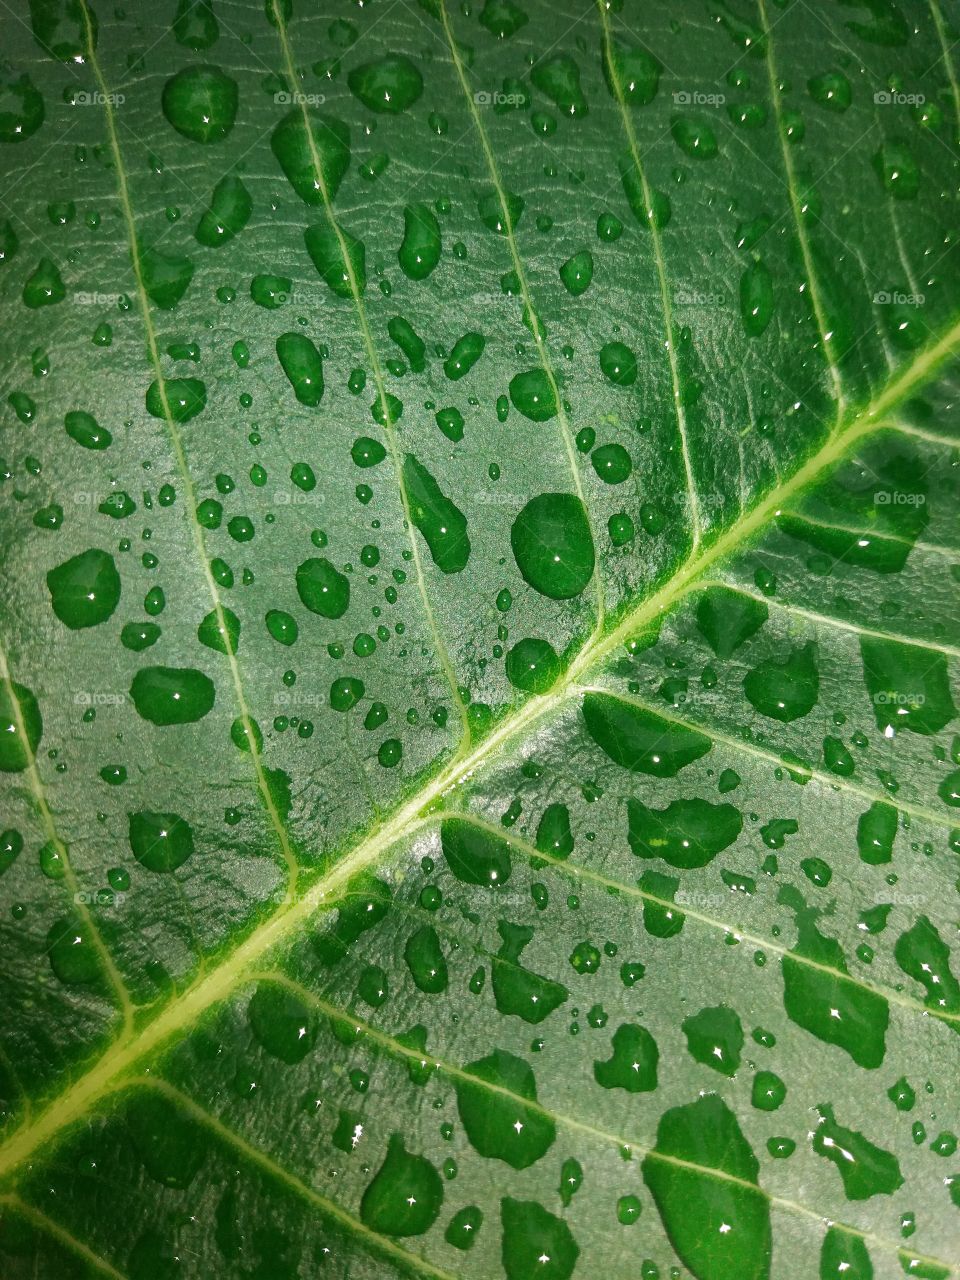 Wet leaf vain by water splash.